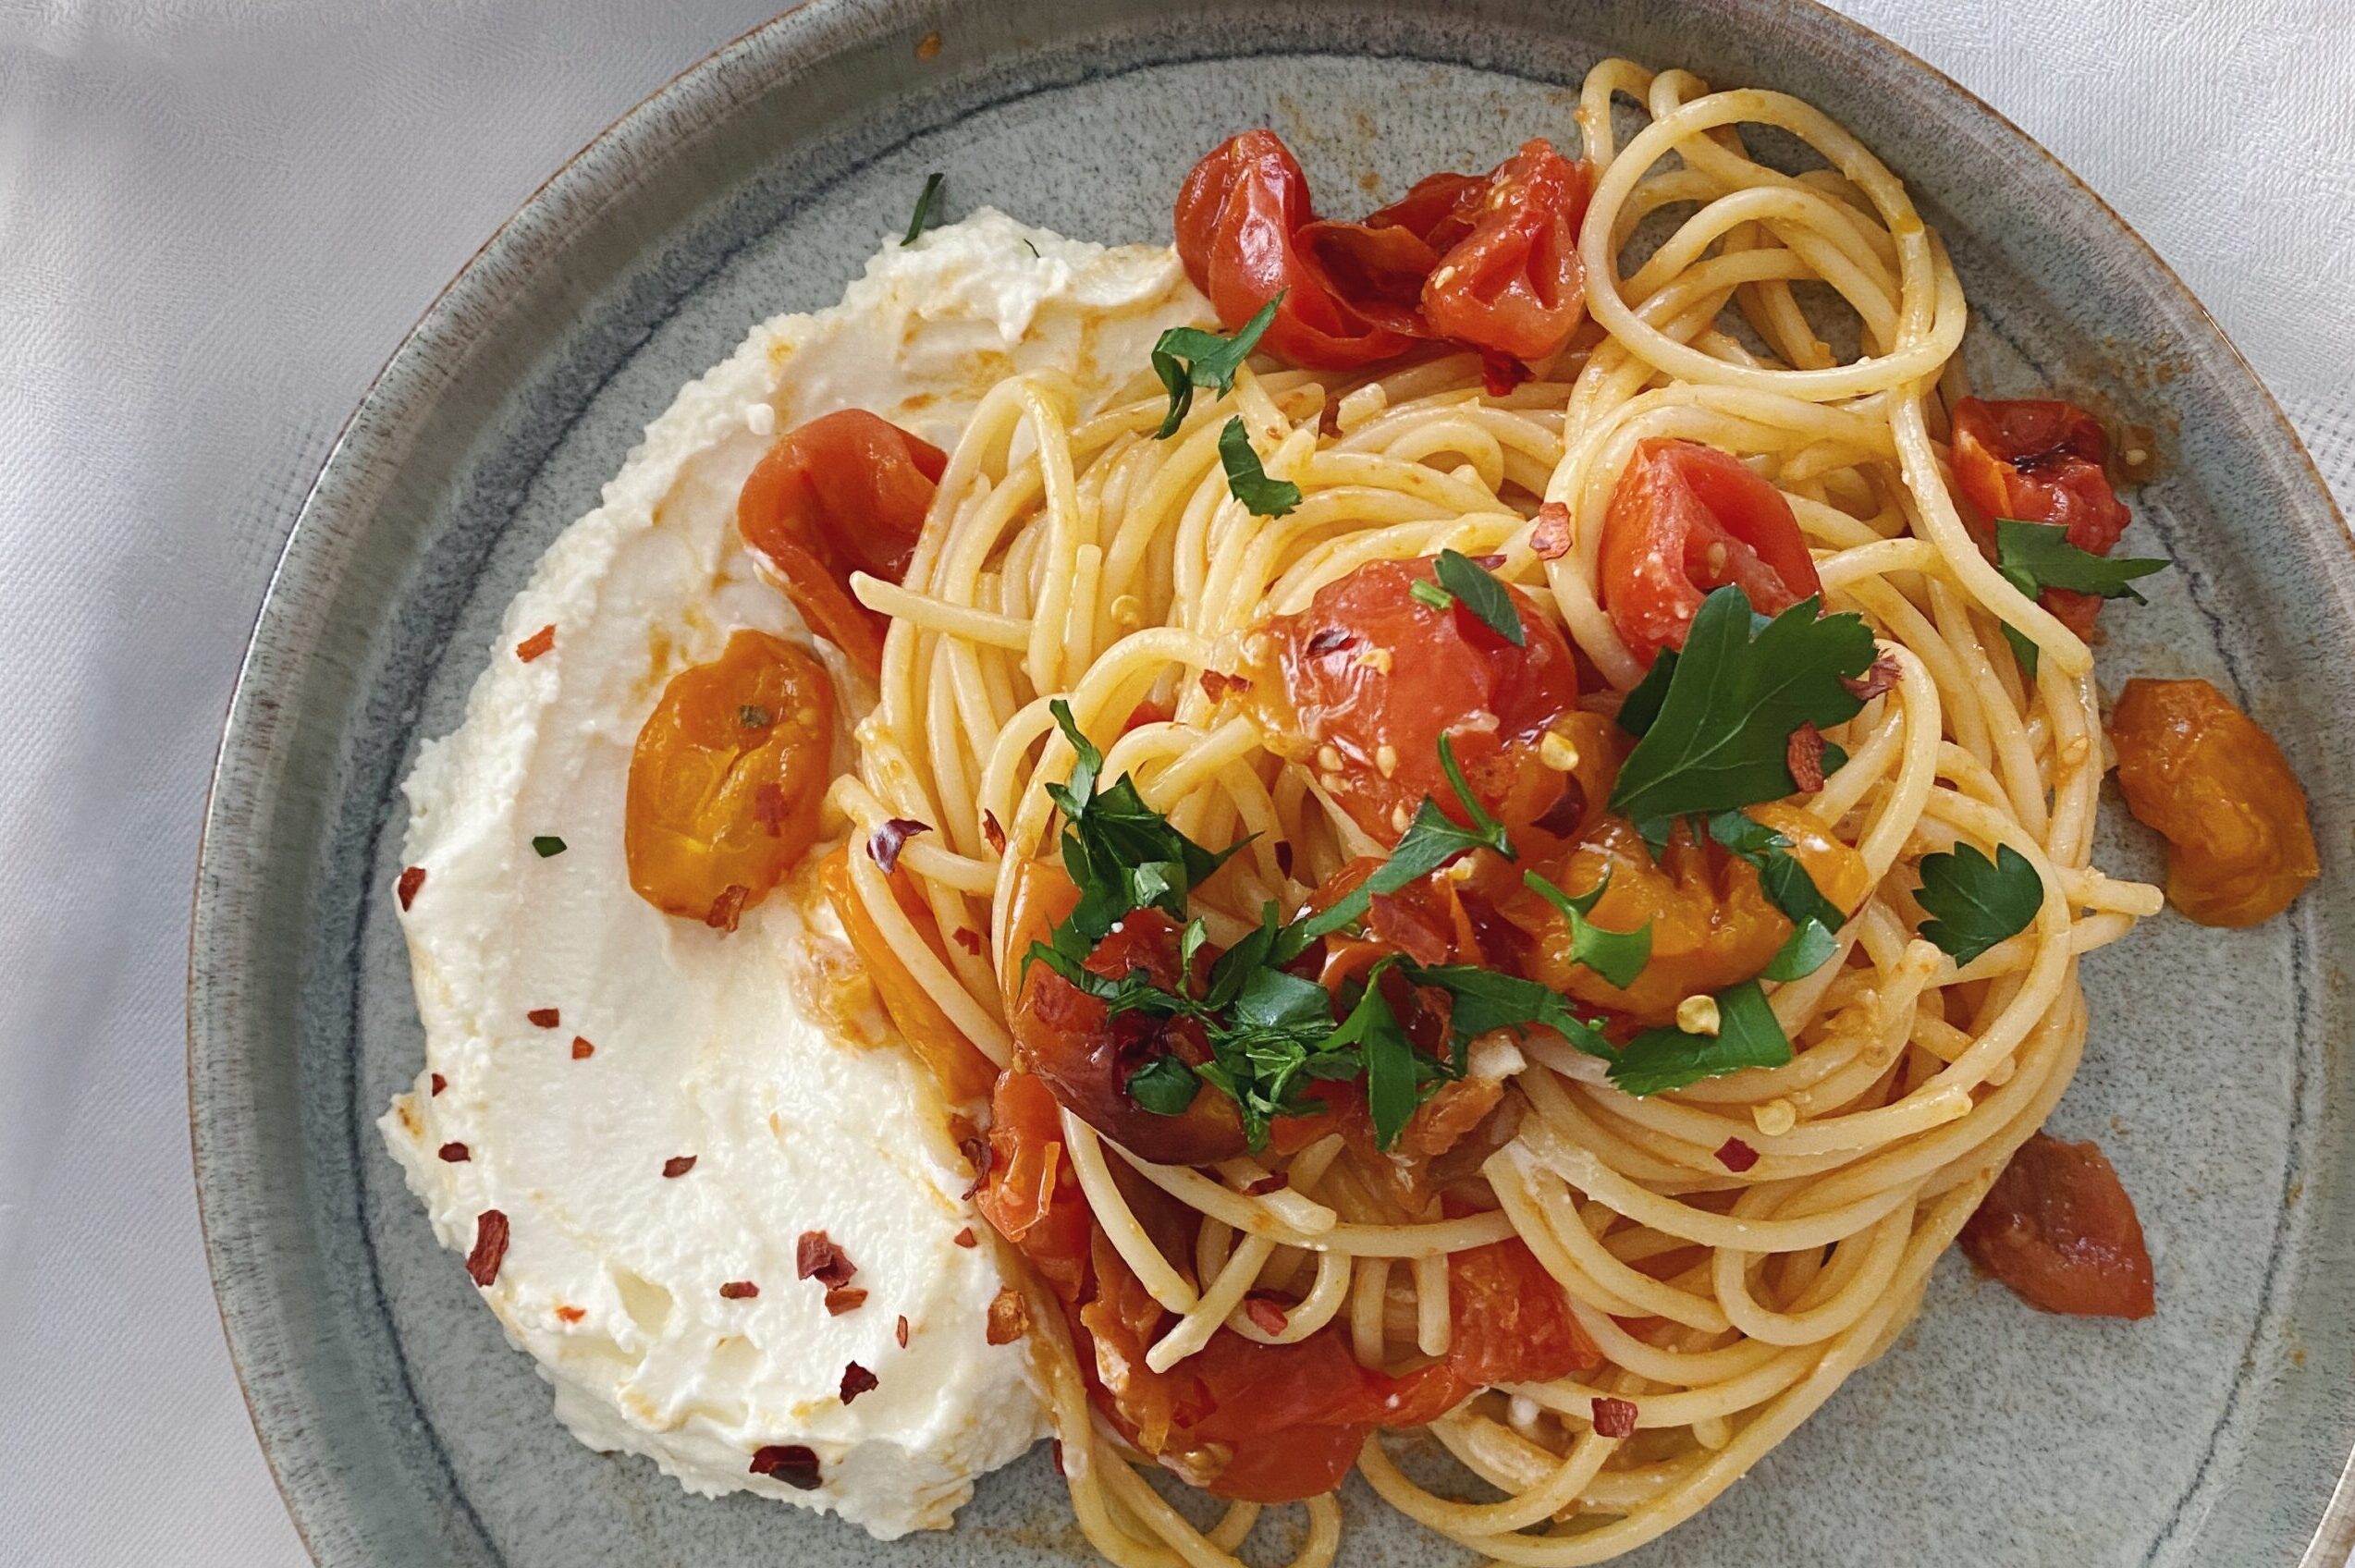 Spaghetti mit gebackenen Tomaten und einer Feta-Crème auf einem blau-grauen Teller angerichtet